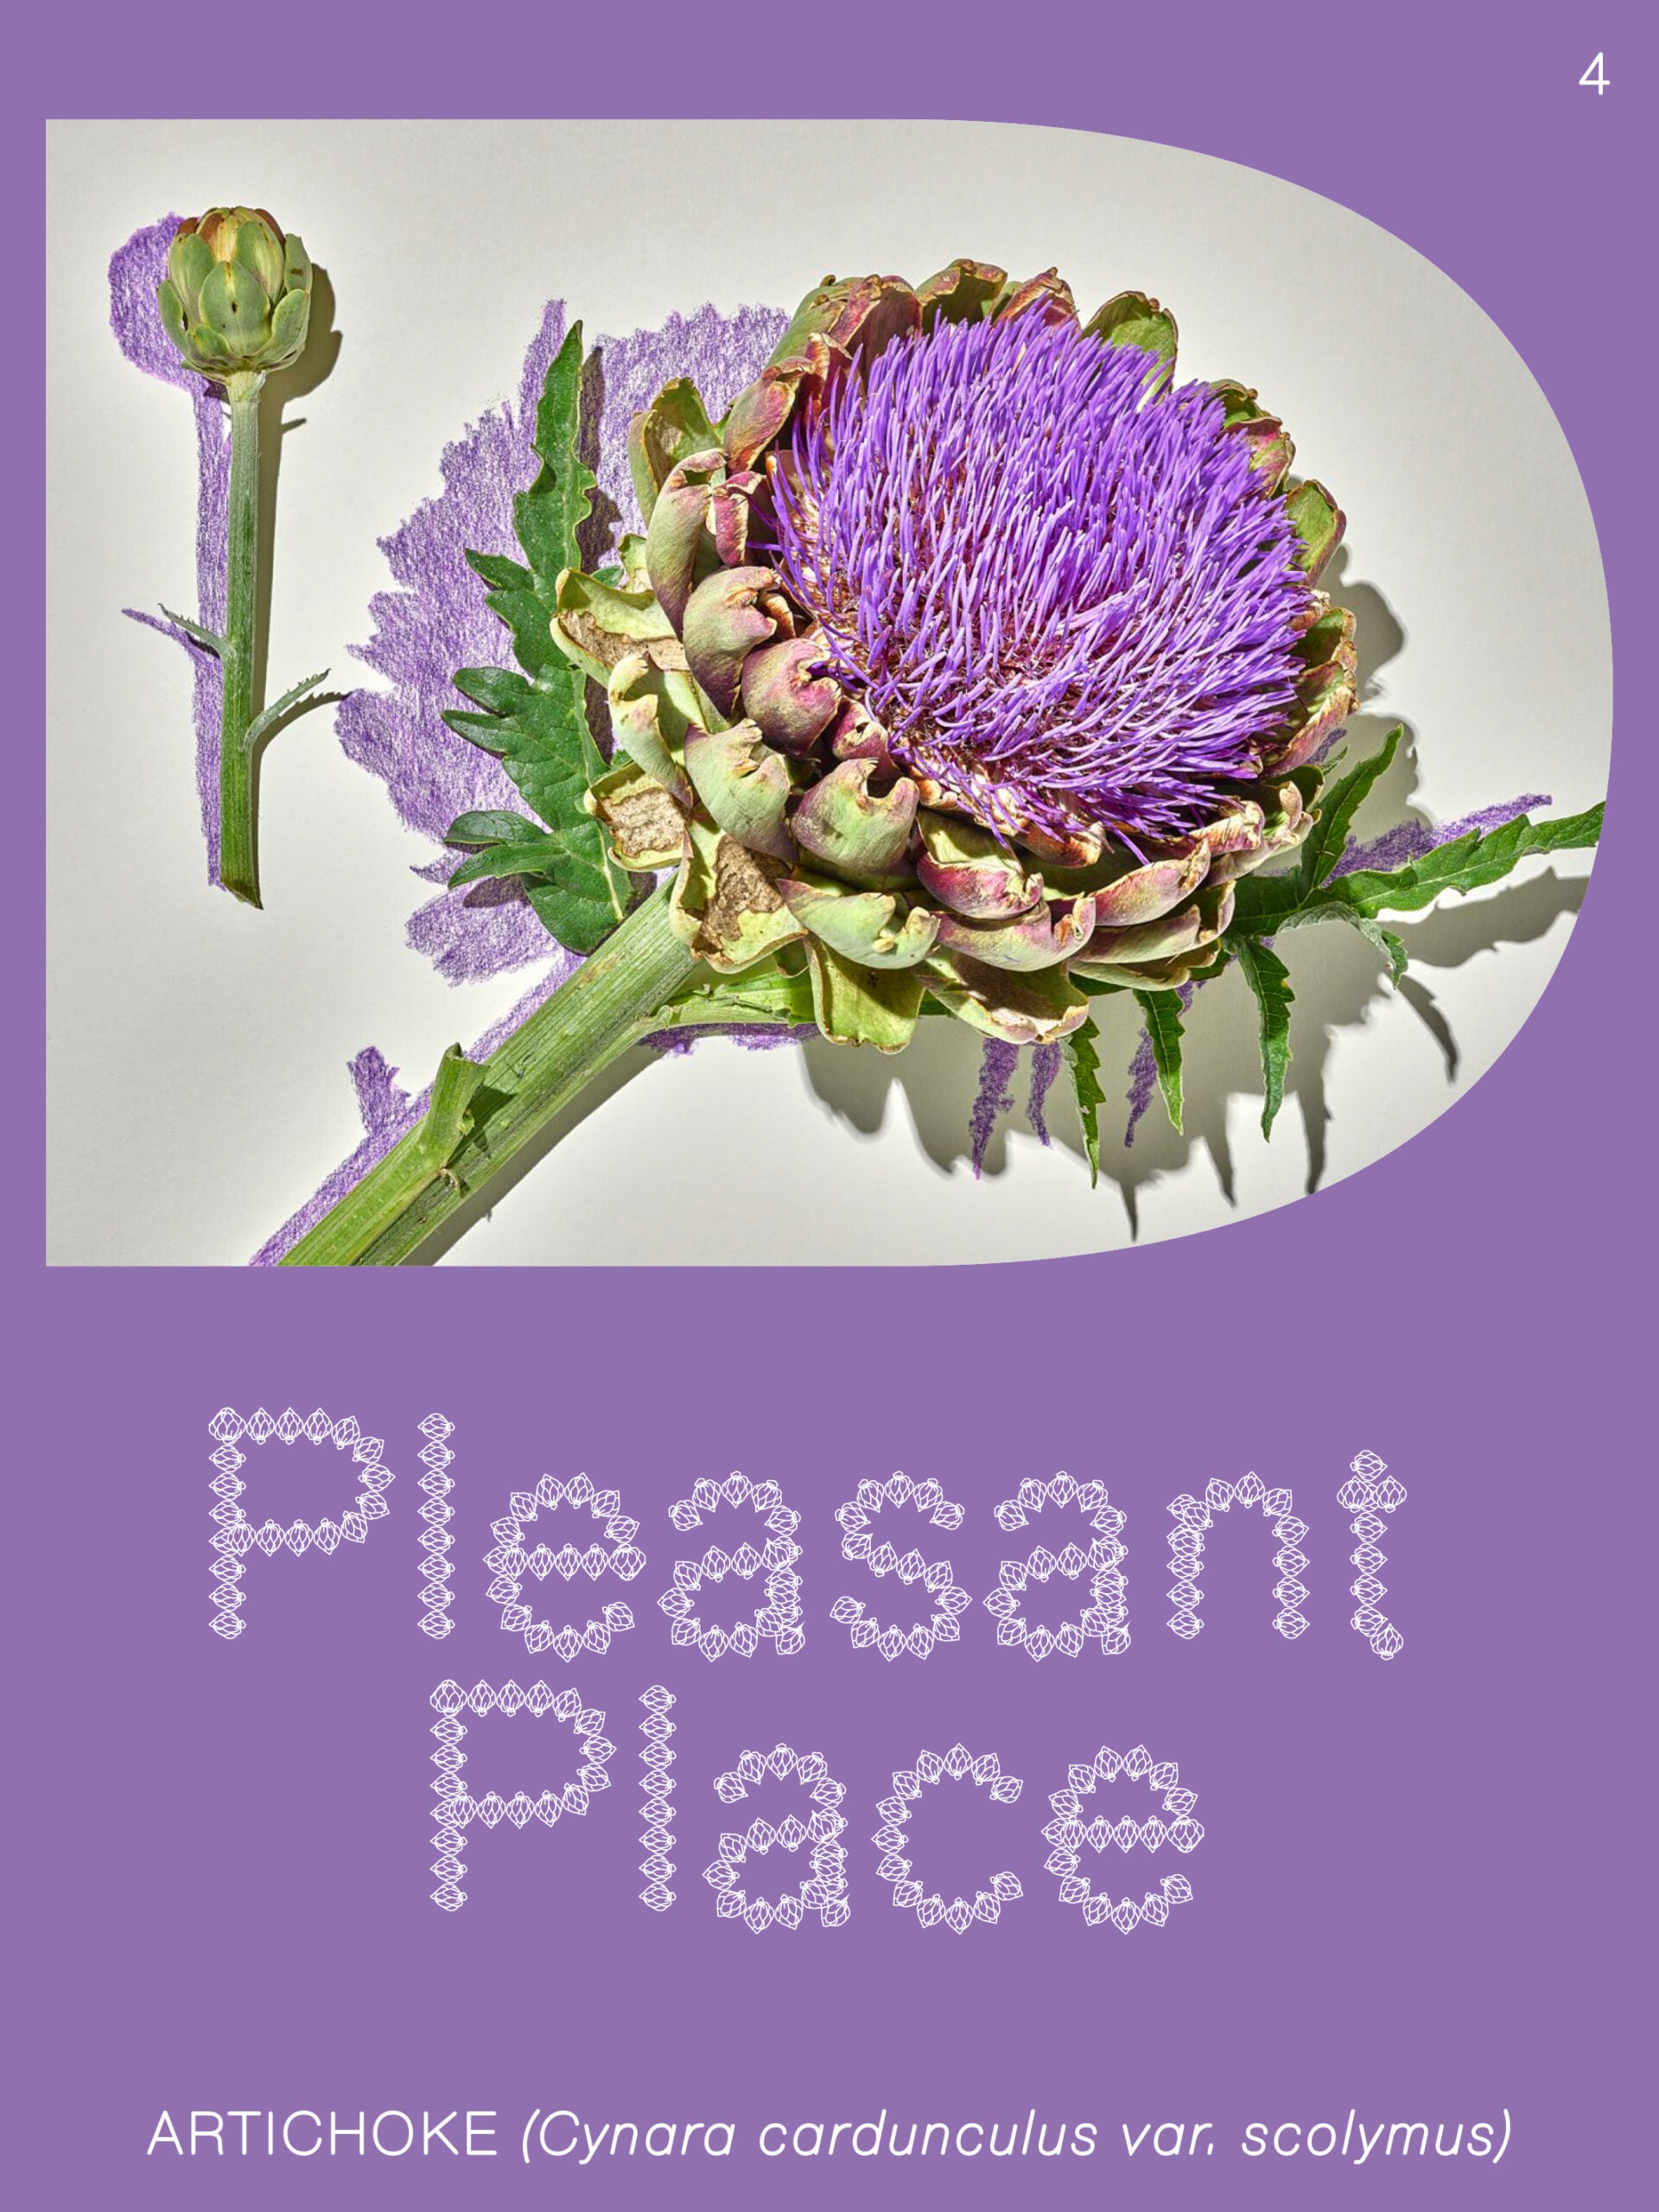 Pleasant Place 4 : Artichaut